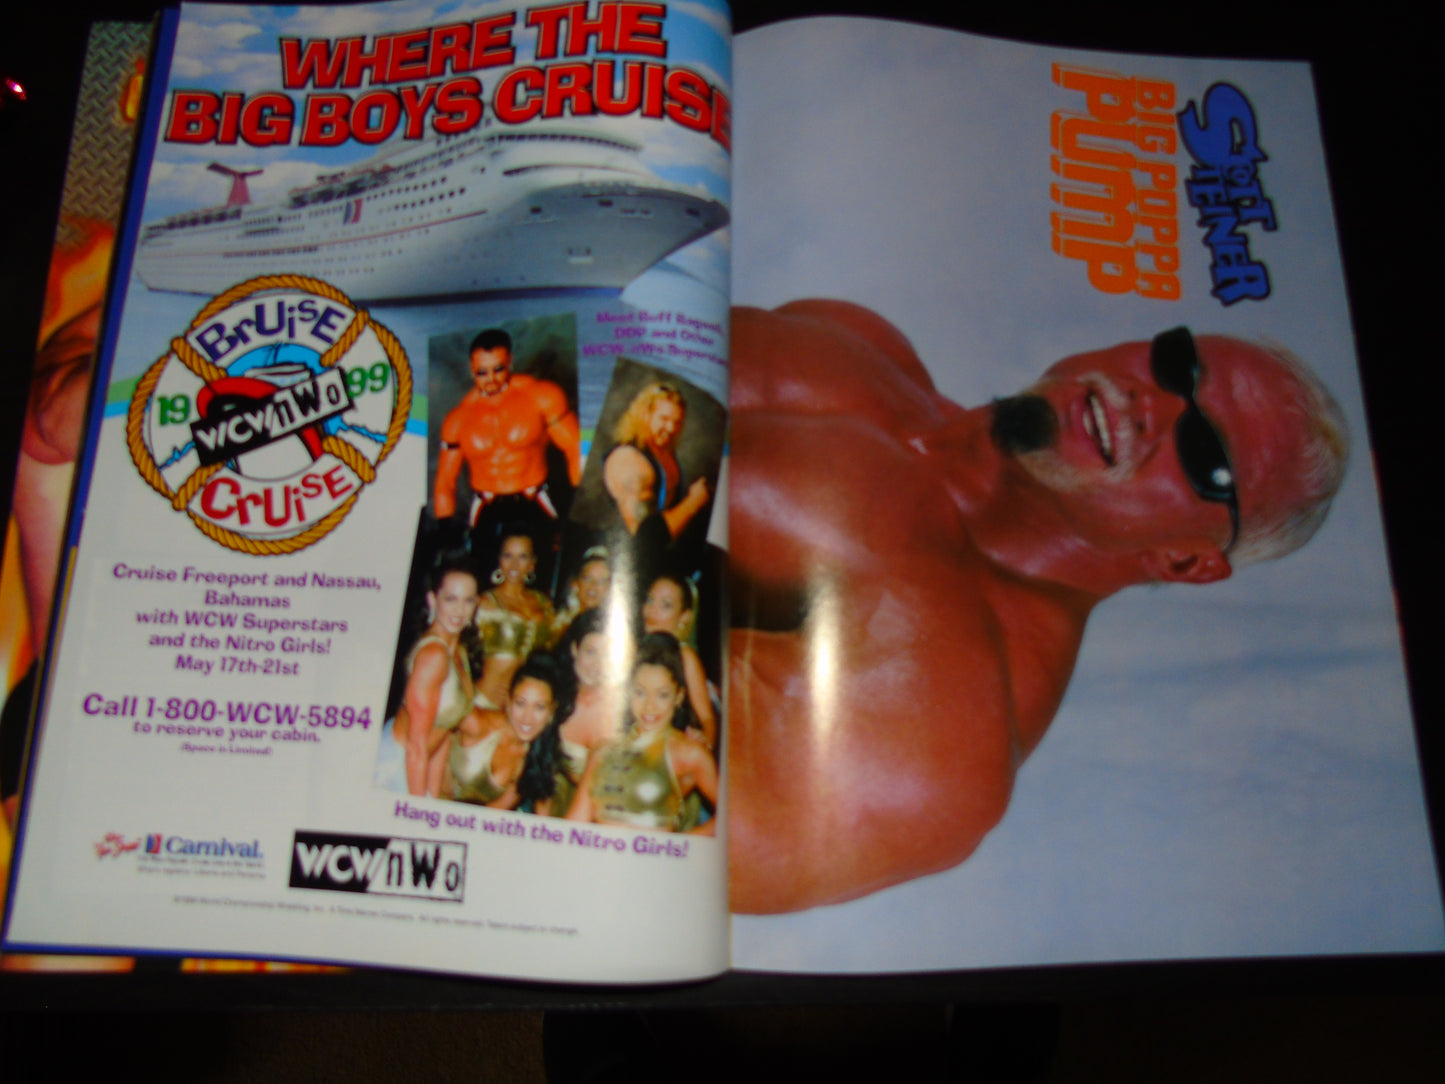 WCW/nWo Magazine April 1999 Issue 49